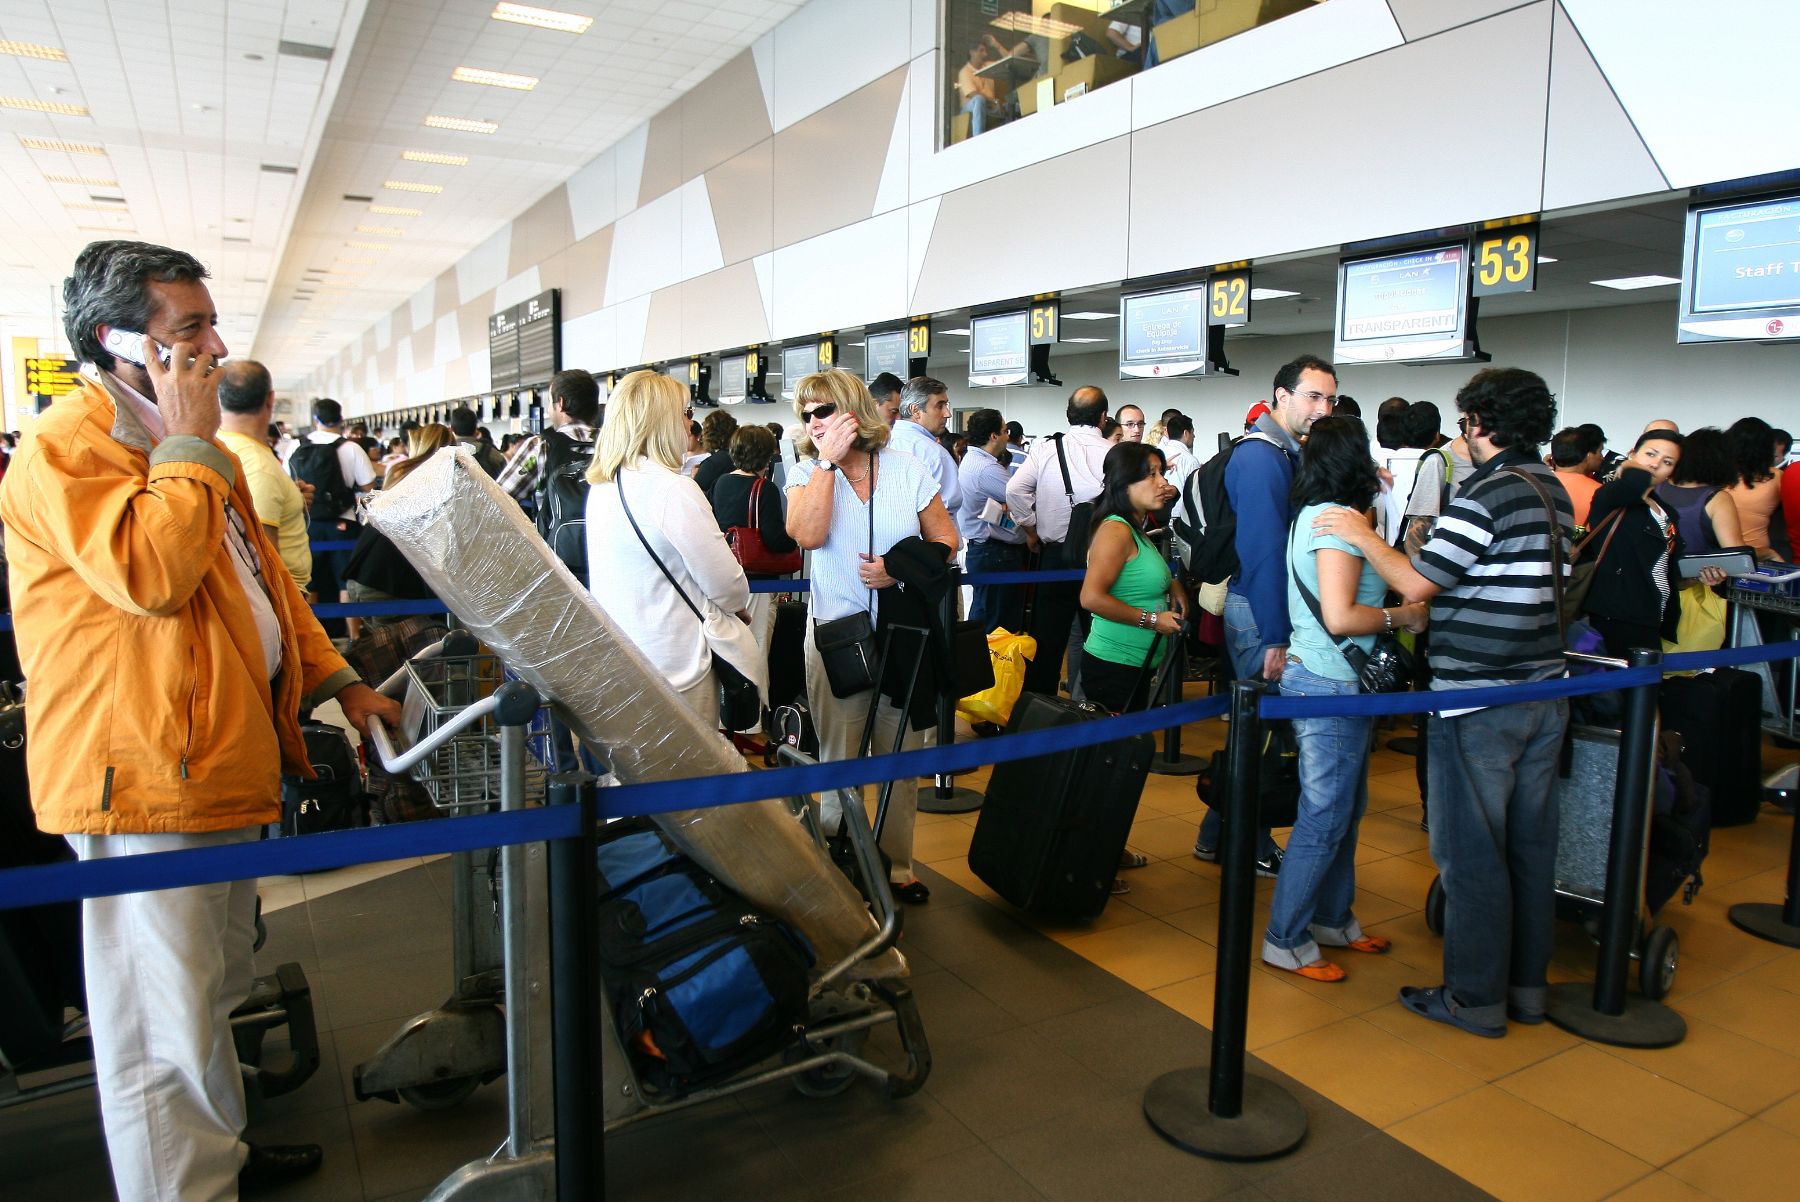 Pasajeros con destino a Santiago se encuentran varados en el Aeropuerto Jorge Chávez ante cancelación de vuelos hacia Chile por terremoto.Foto: ANDINA/Victor Palomino